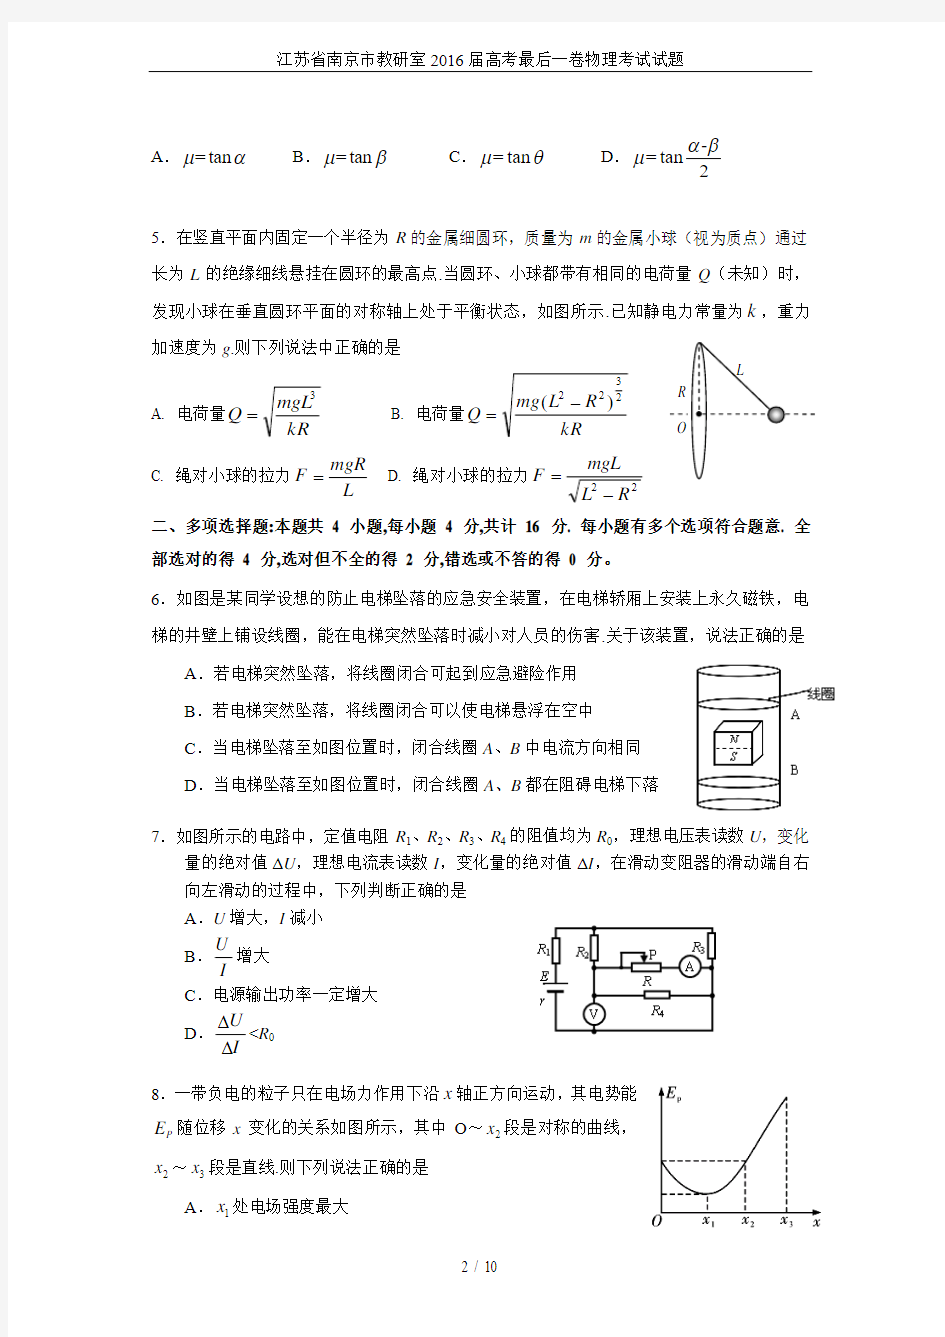 江苏省南京市教研室2016届高考最后一卷物理考试试题